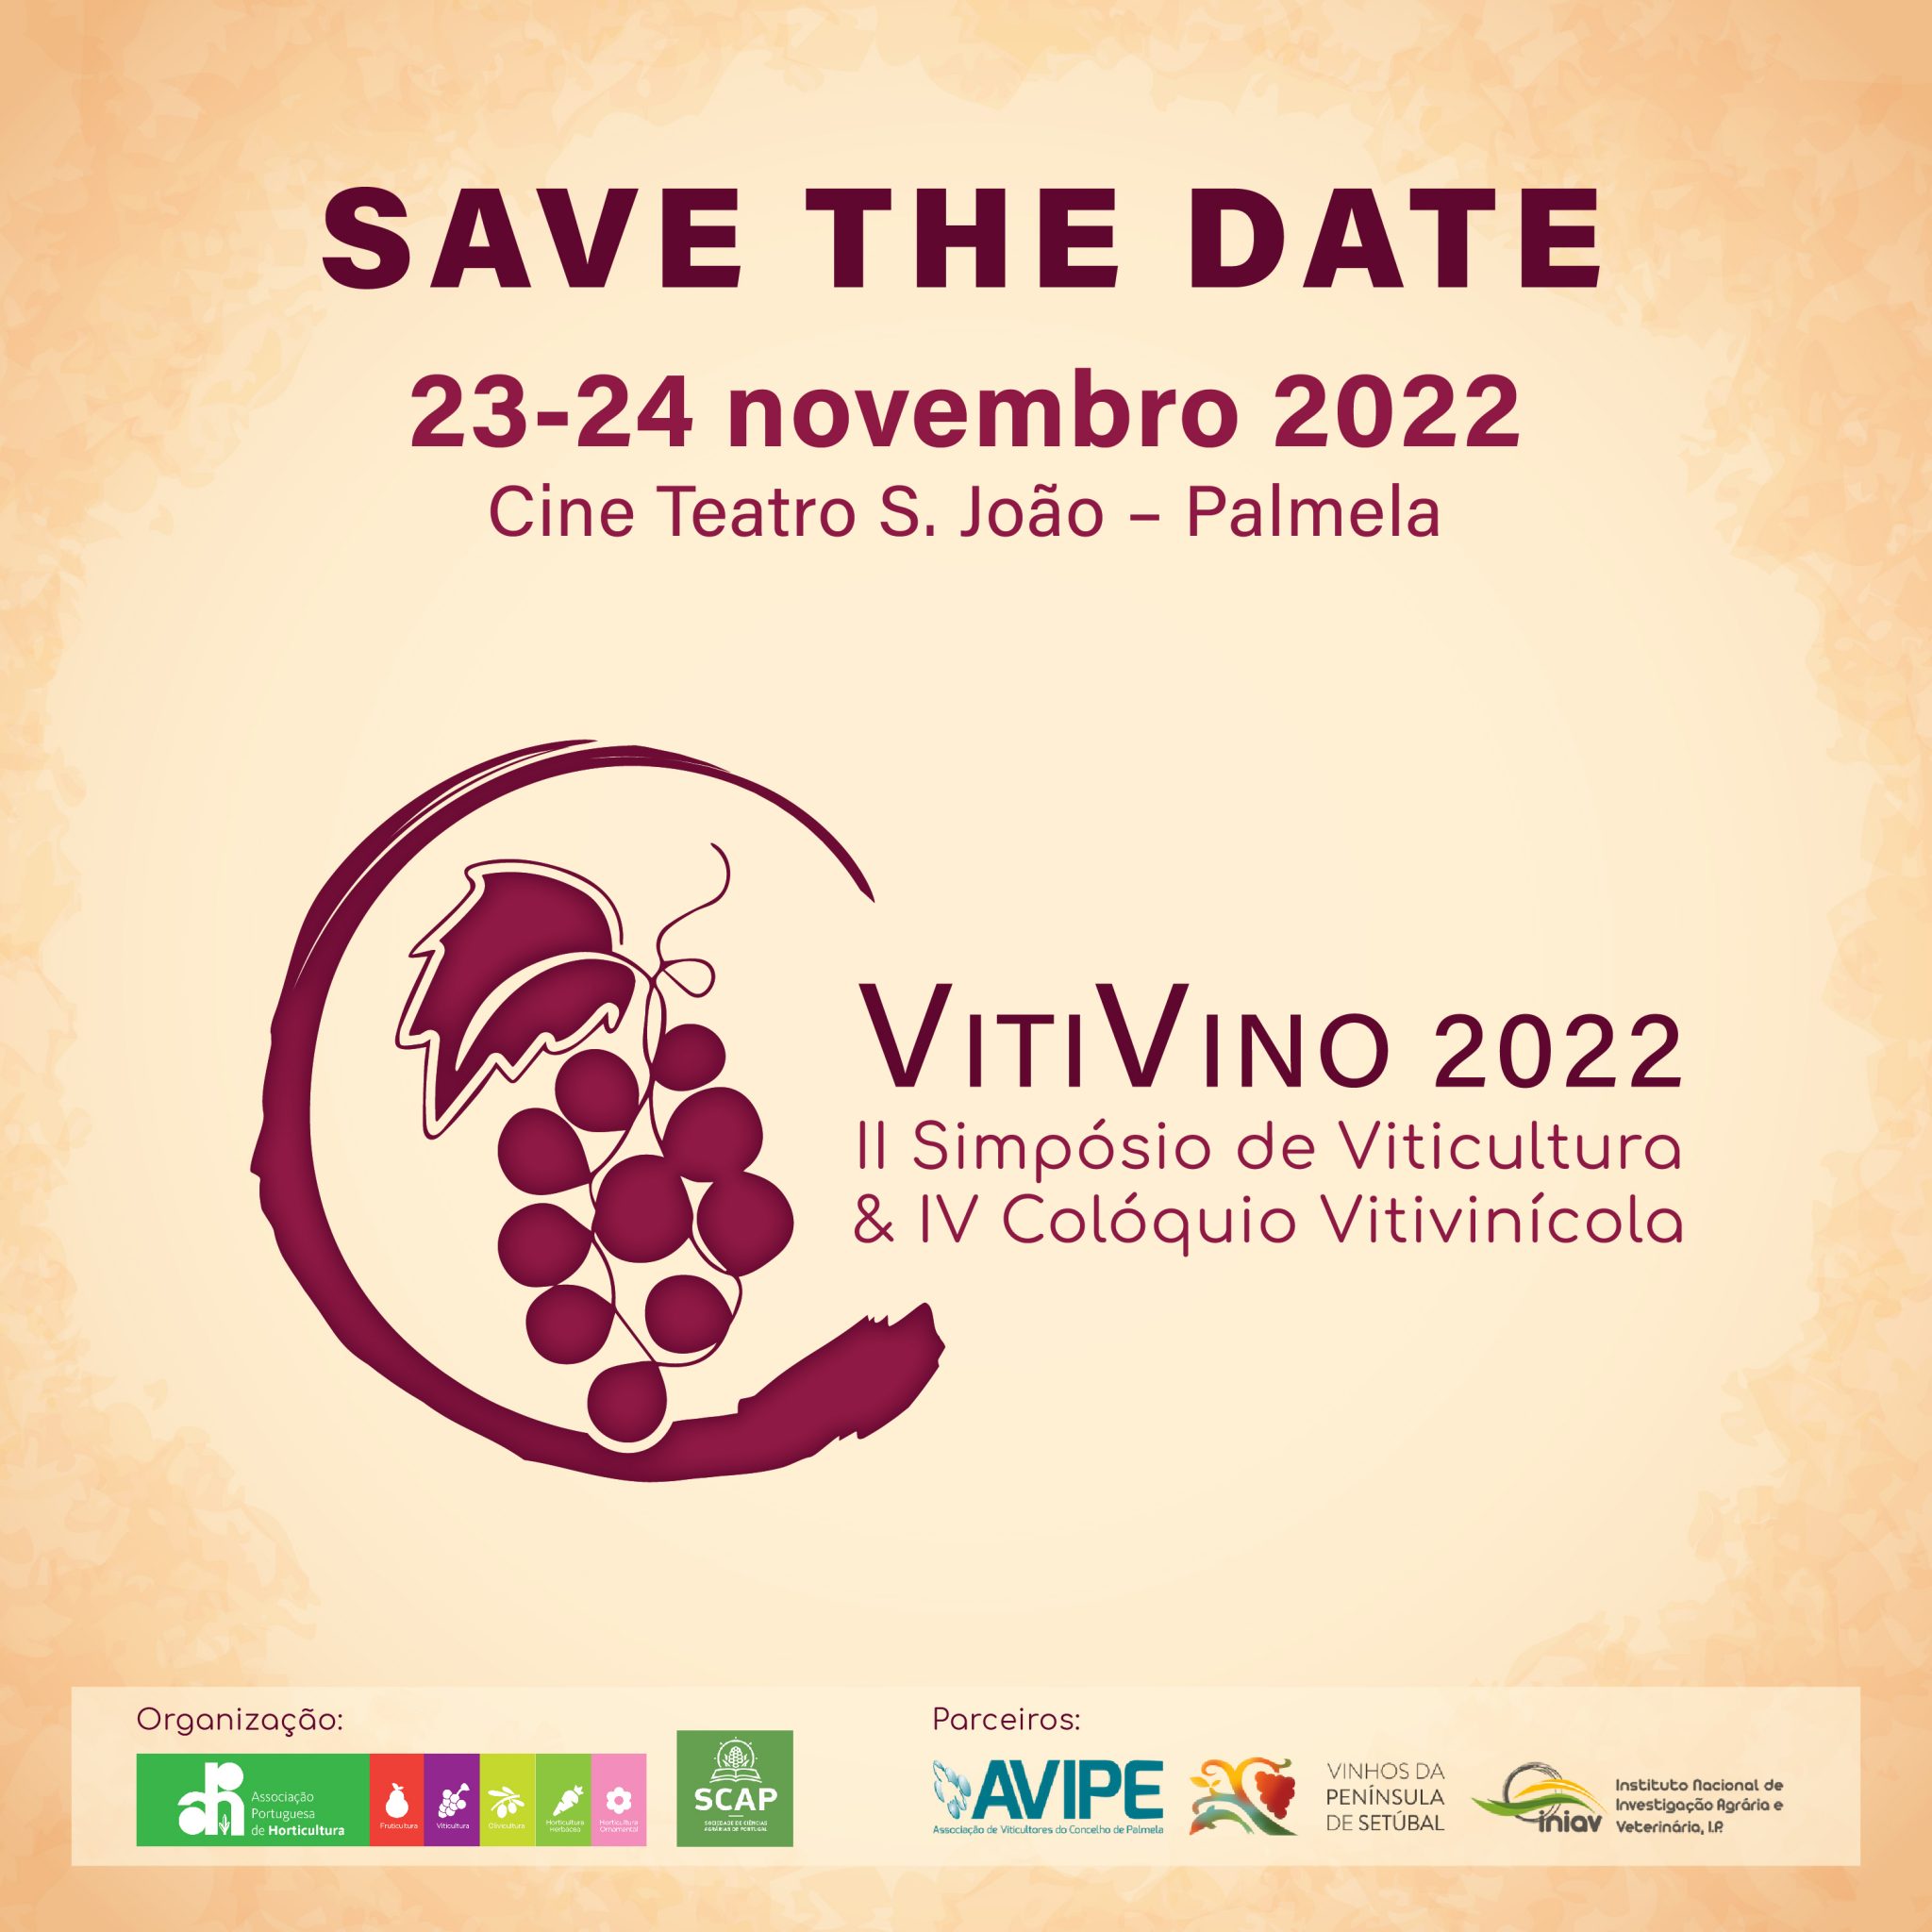 VitiVino 2022: marque na agenda!